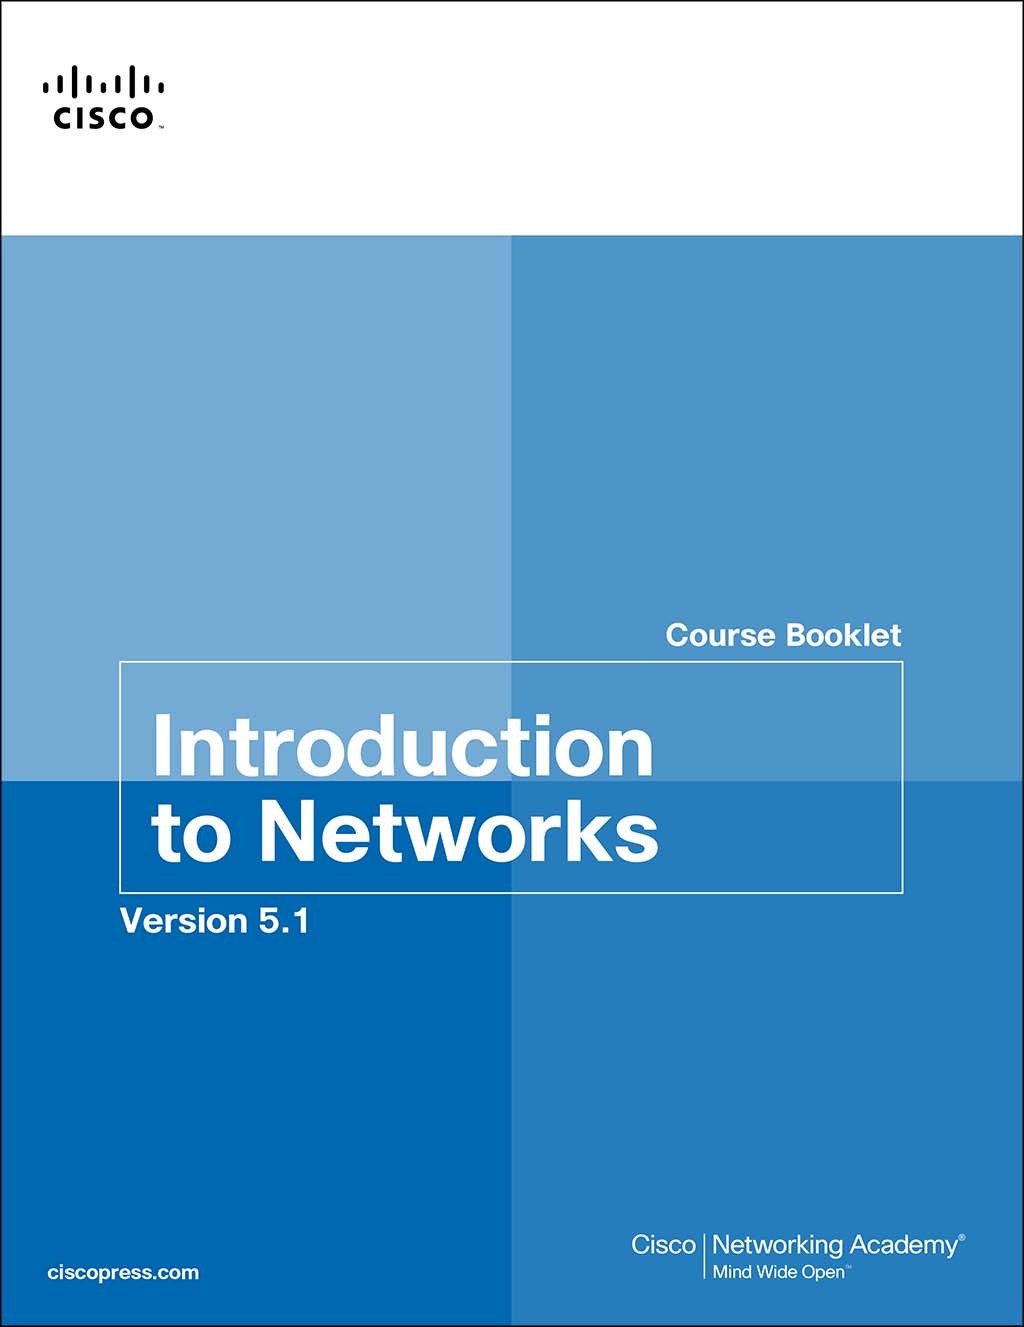 Plantando árboles Hacer la cama puñetazo Introduction to Networks Course Booklet v5.1 | Cisco Press